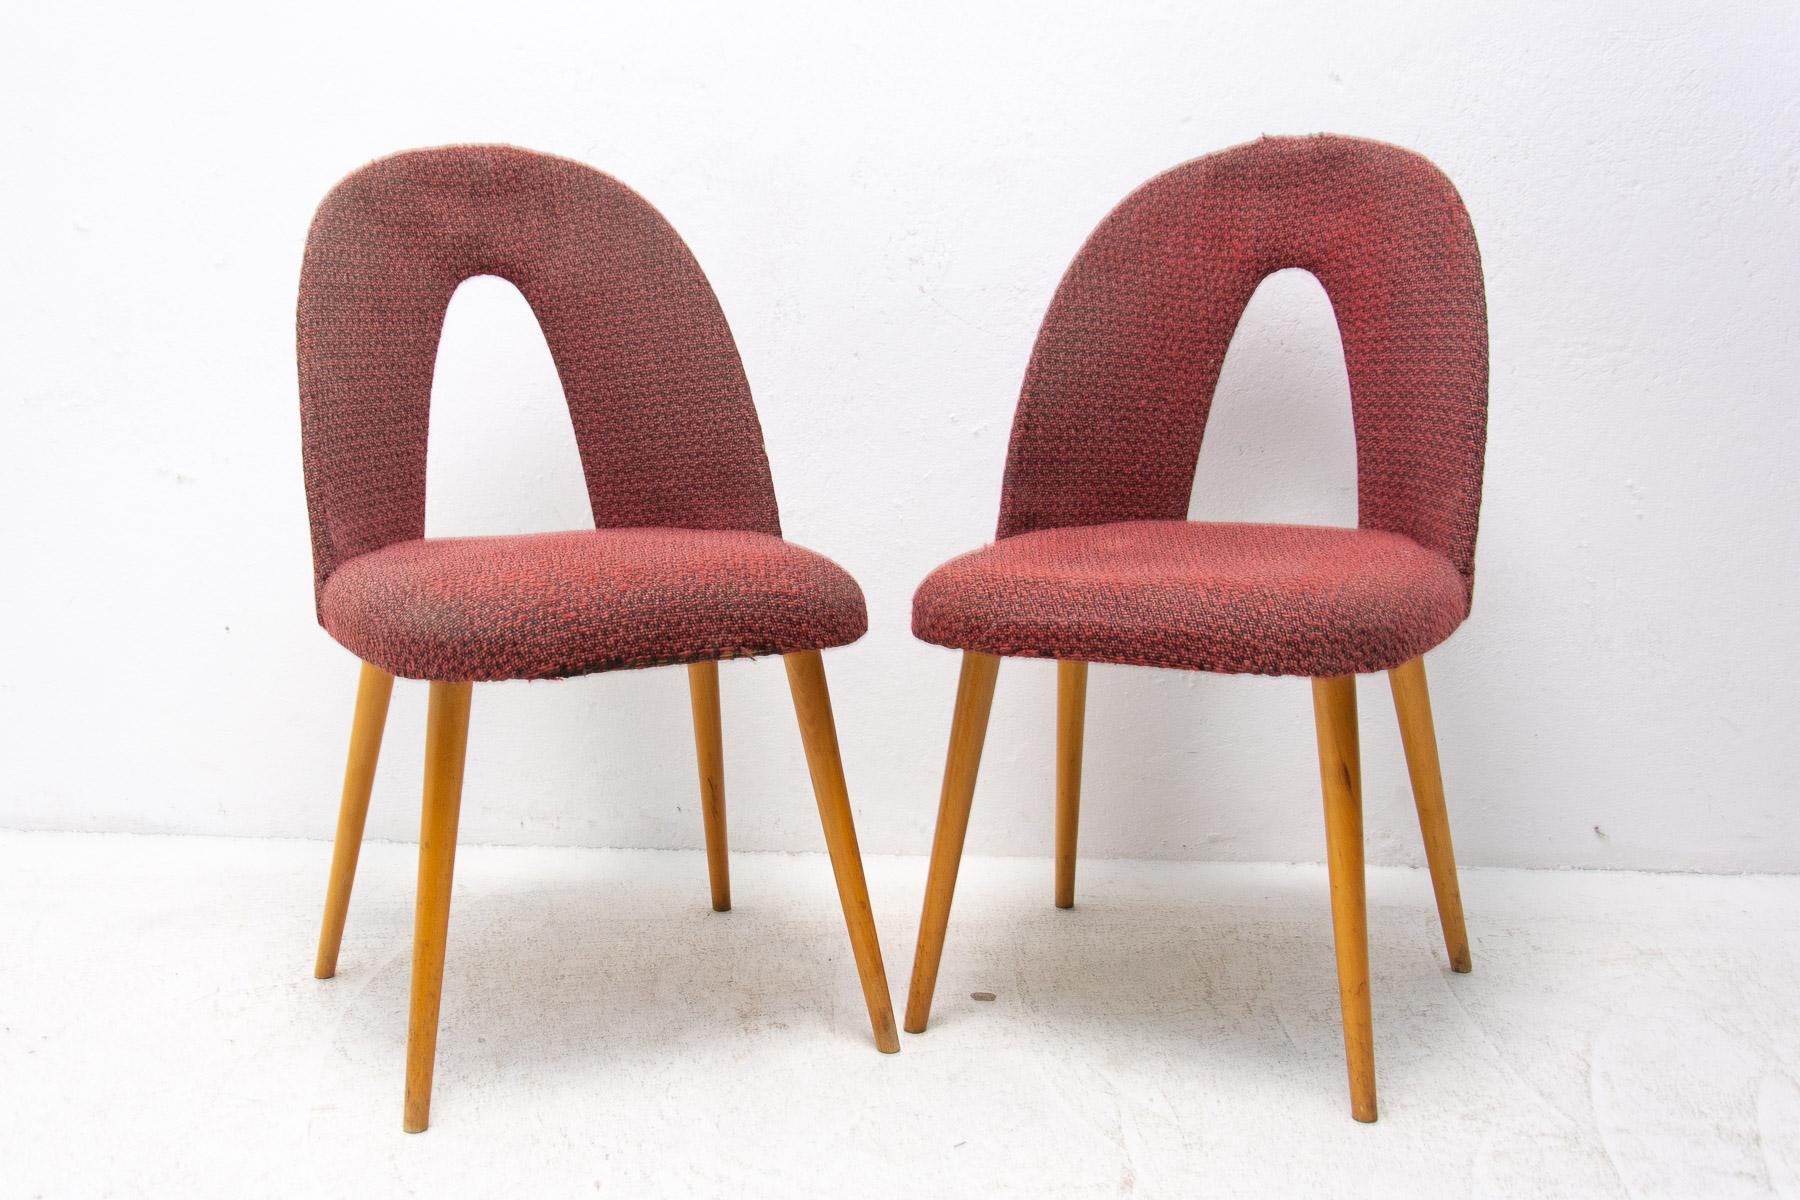 Chaises de salle à manger en bois courbé conçues par Antonin Suman. Les chaises sont tapissées de tissu et fabriquées en contreplaqué cintré et en bois de hêtre. Fabriqué dans l'ancienne Tchécoslovaquie dans les années 1960. Les chaises sont